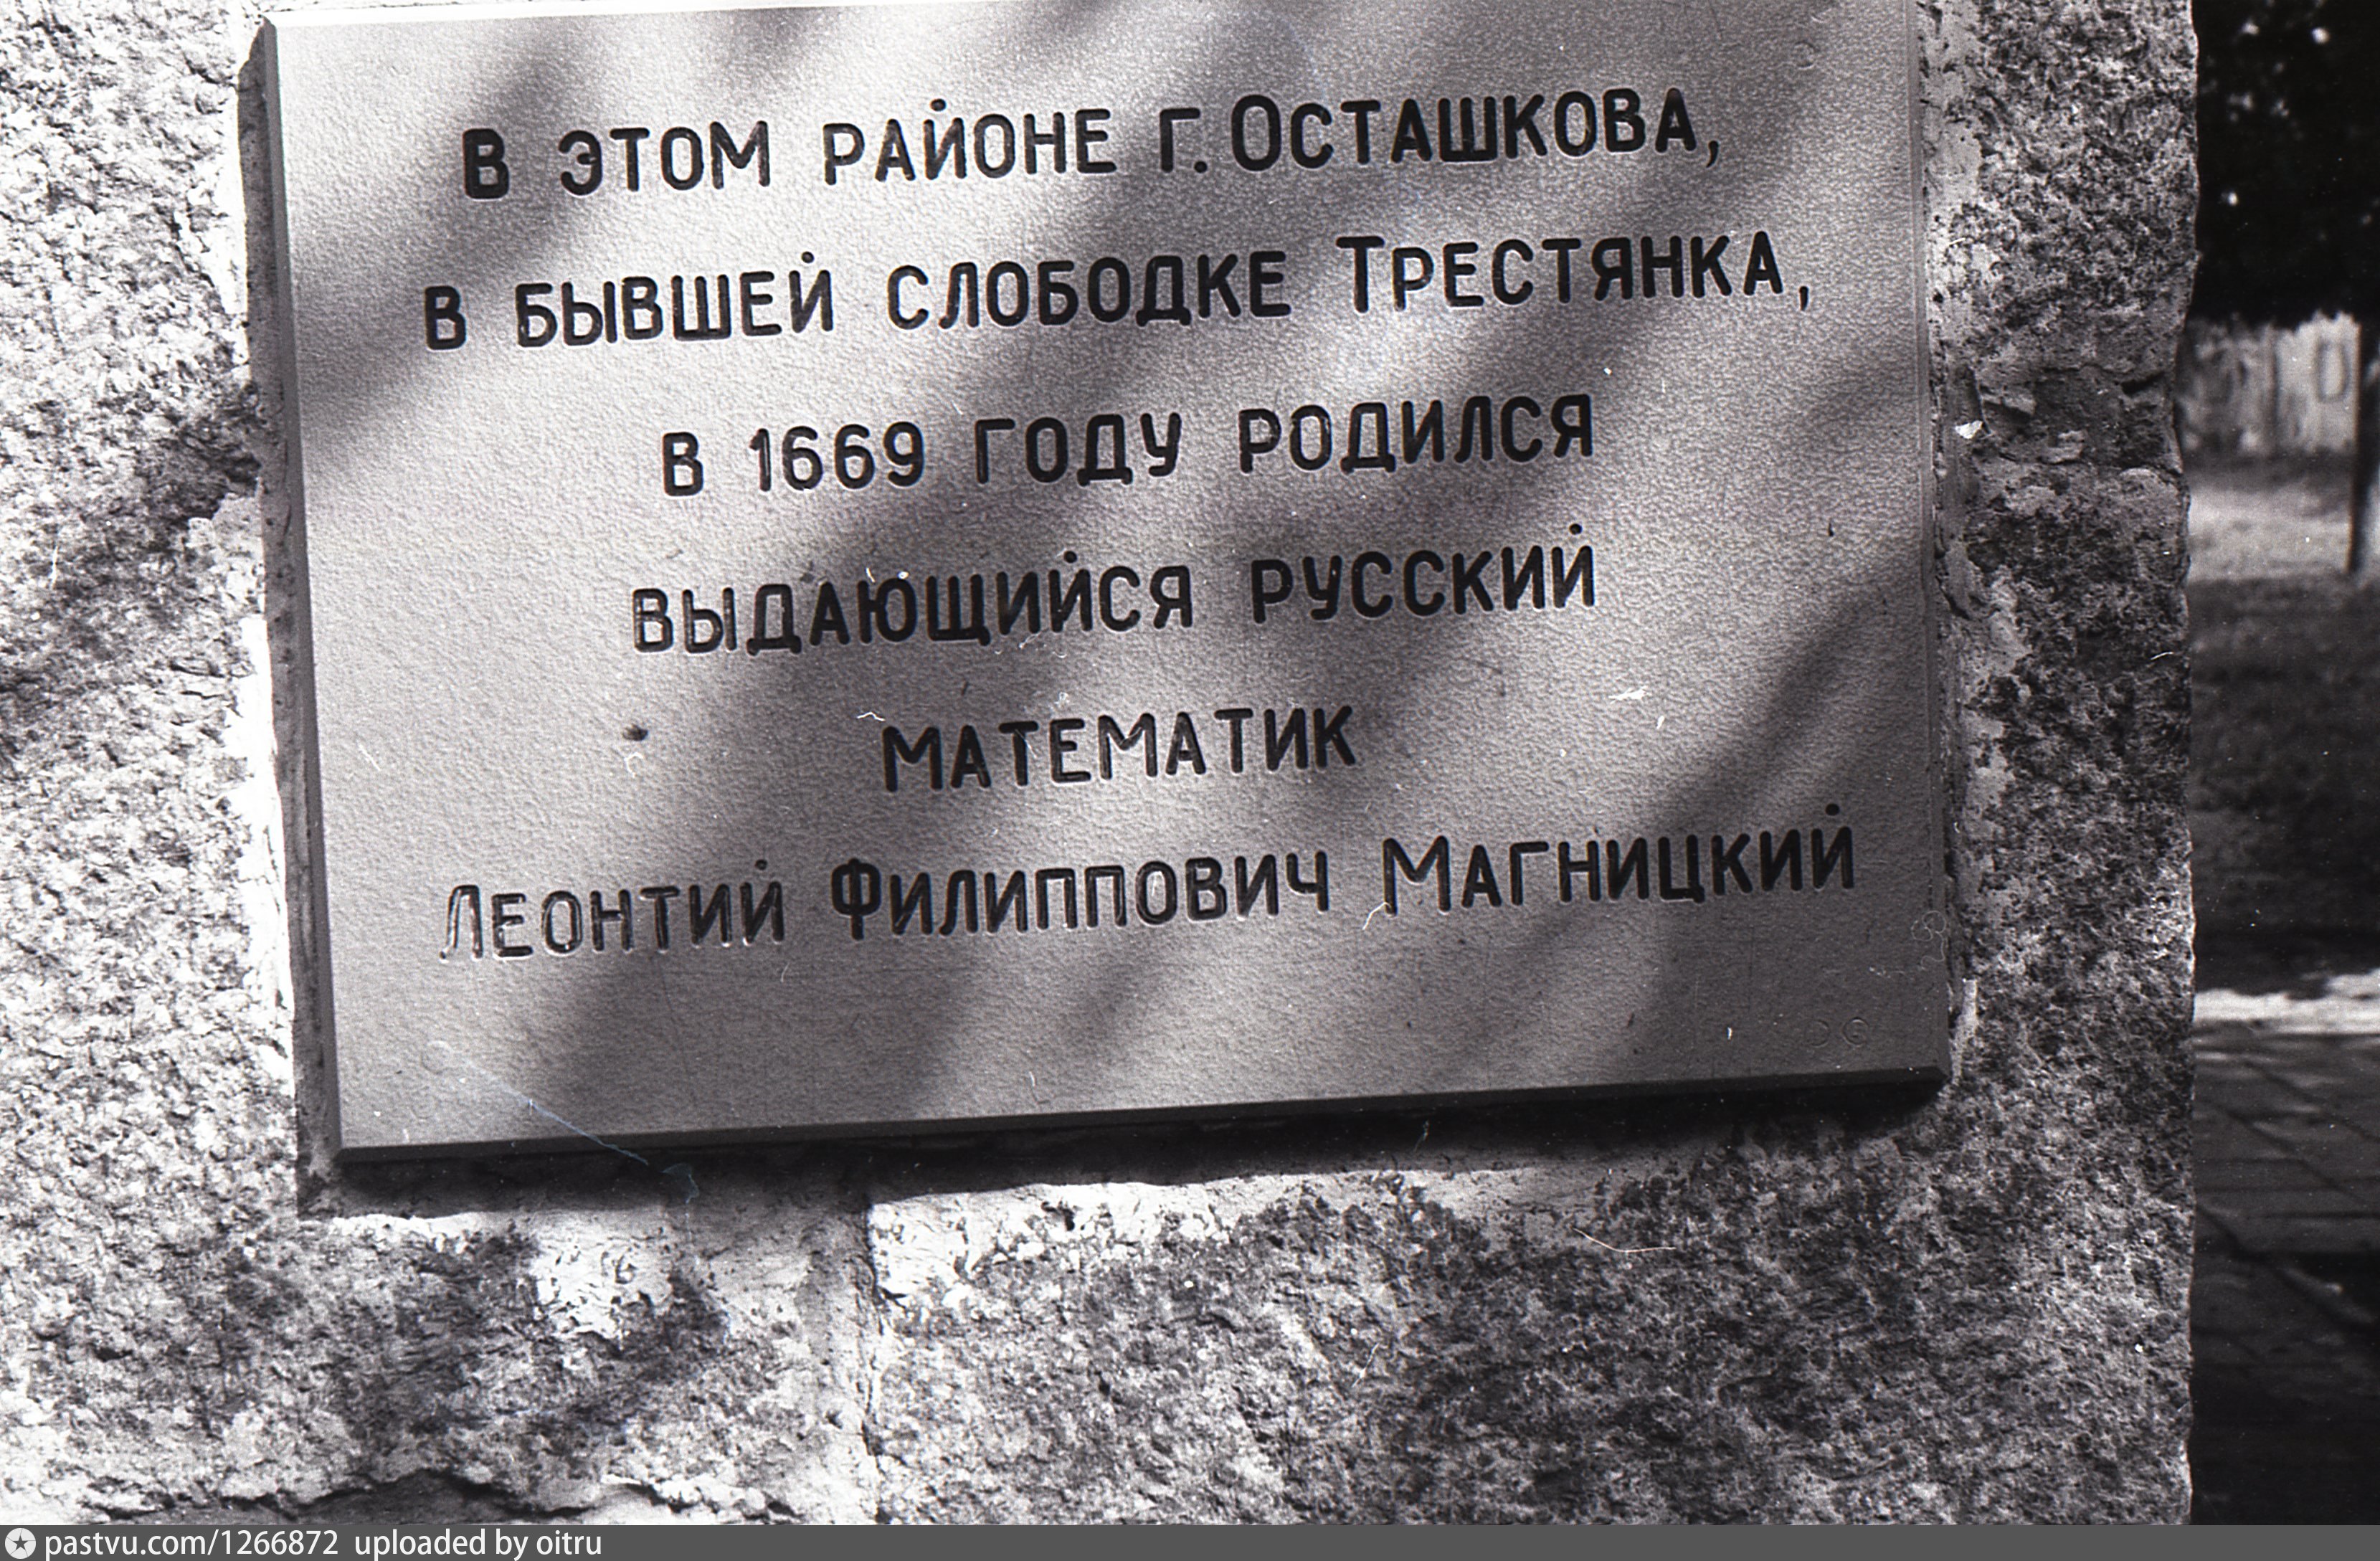 Воронеж памятный камень основания школы Магницкого